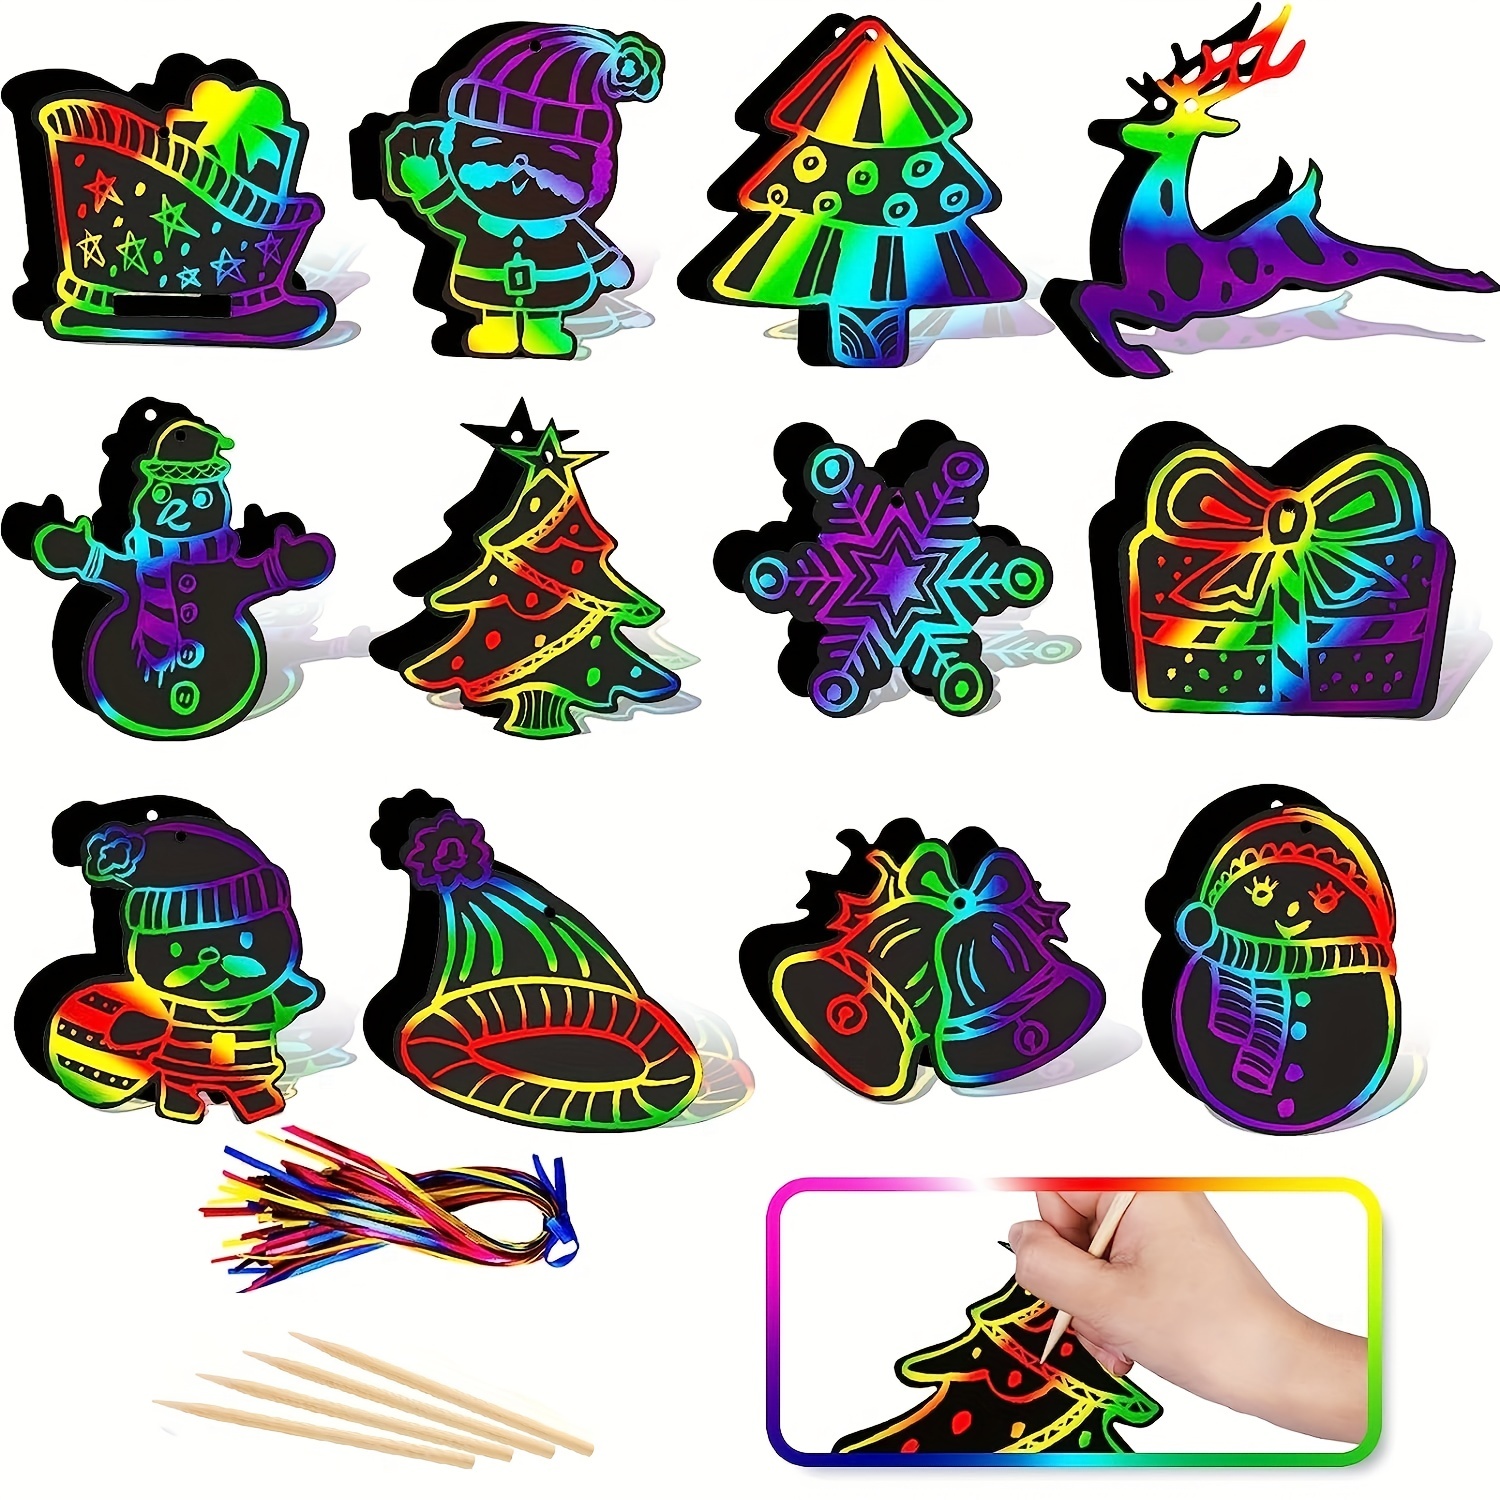 Scratch Art Kids House Fairy Tales Rainbow Scratch Paper - Temu